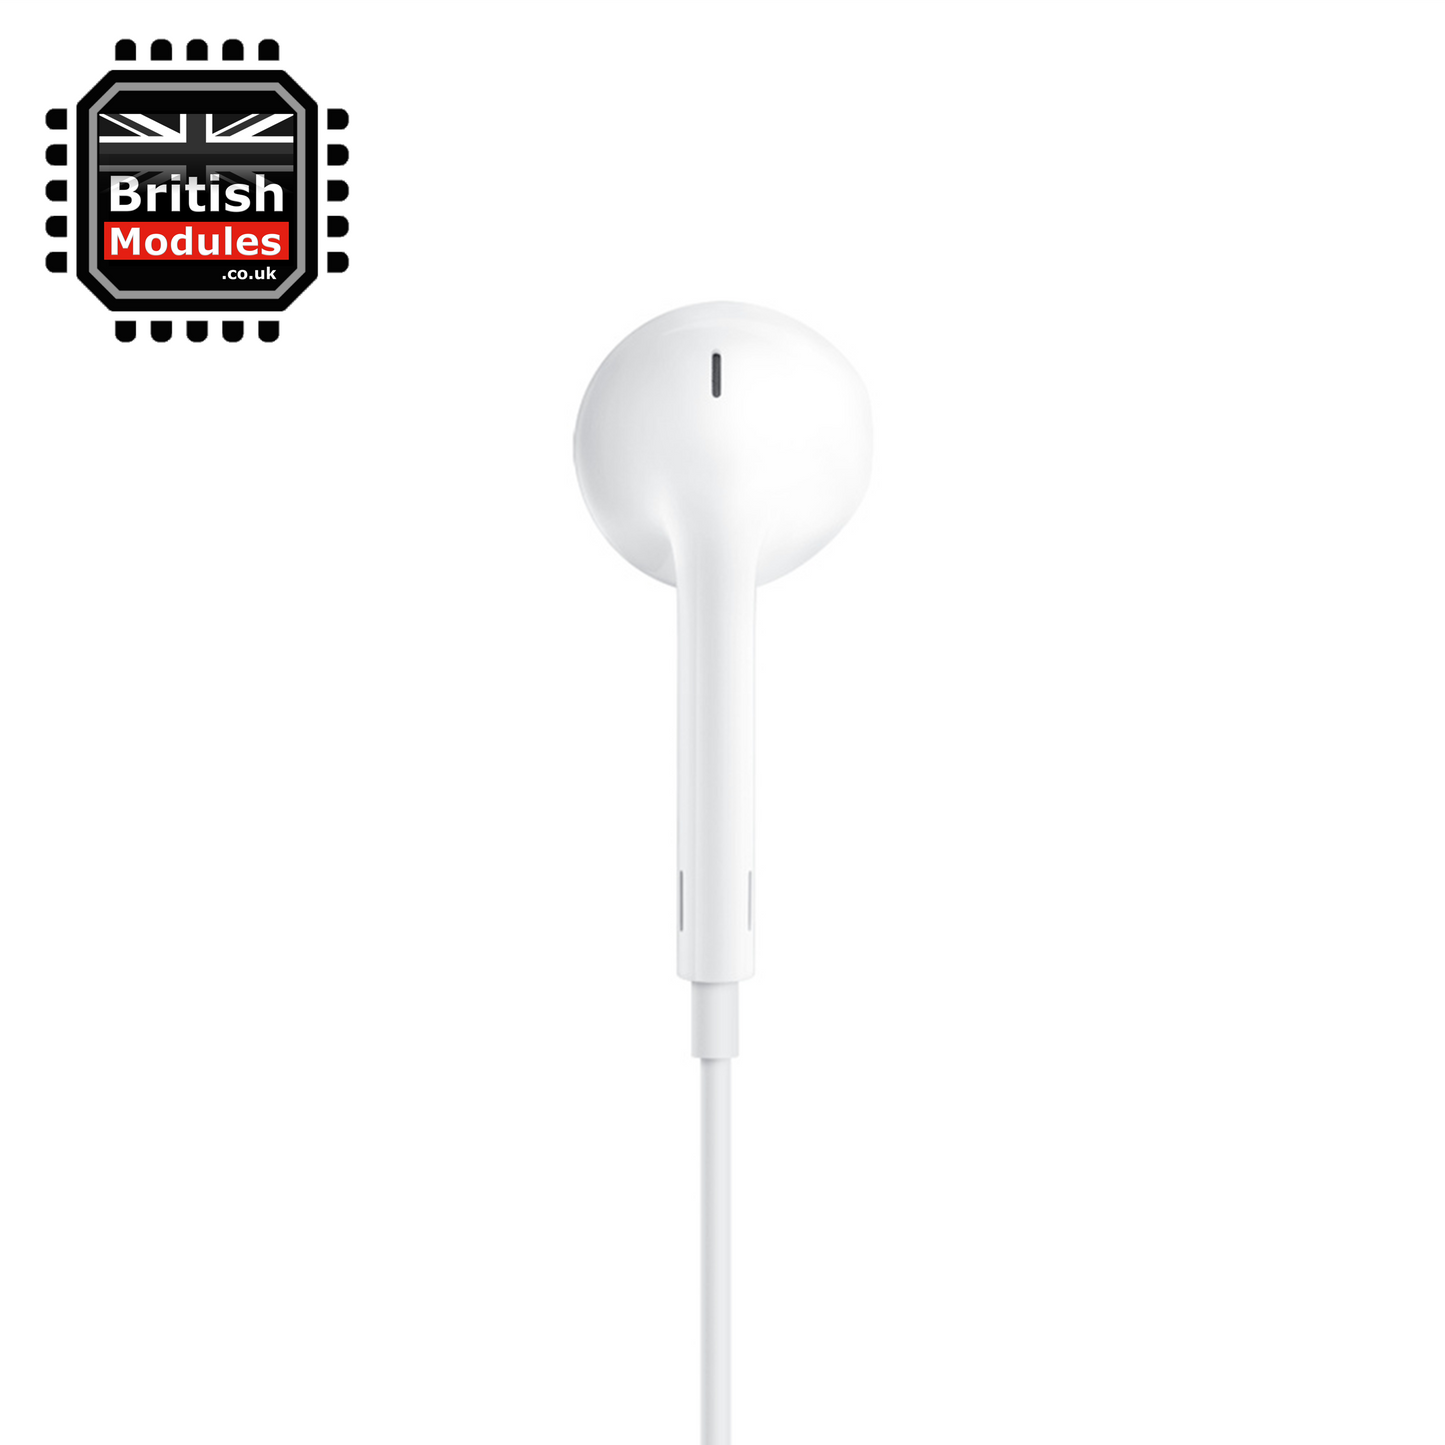 EarPods with Lightning Connector for Apple iPhone / iPad Earphones Headphones